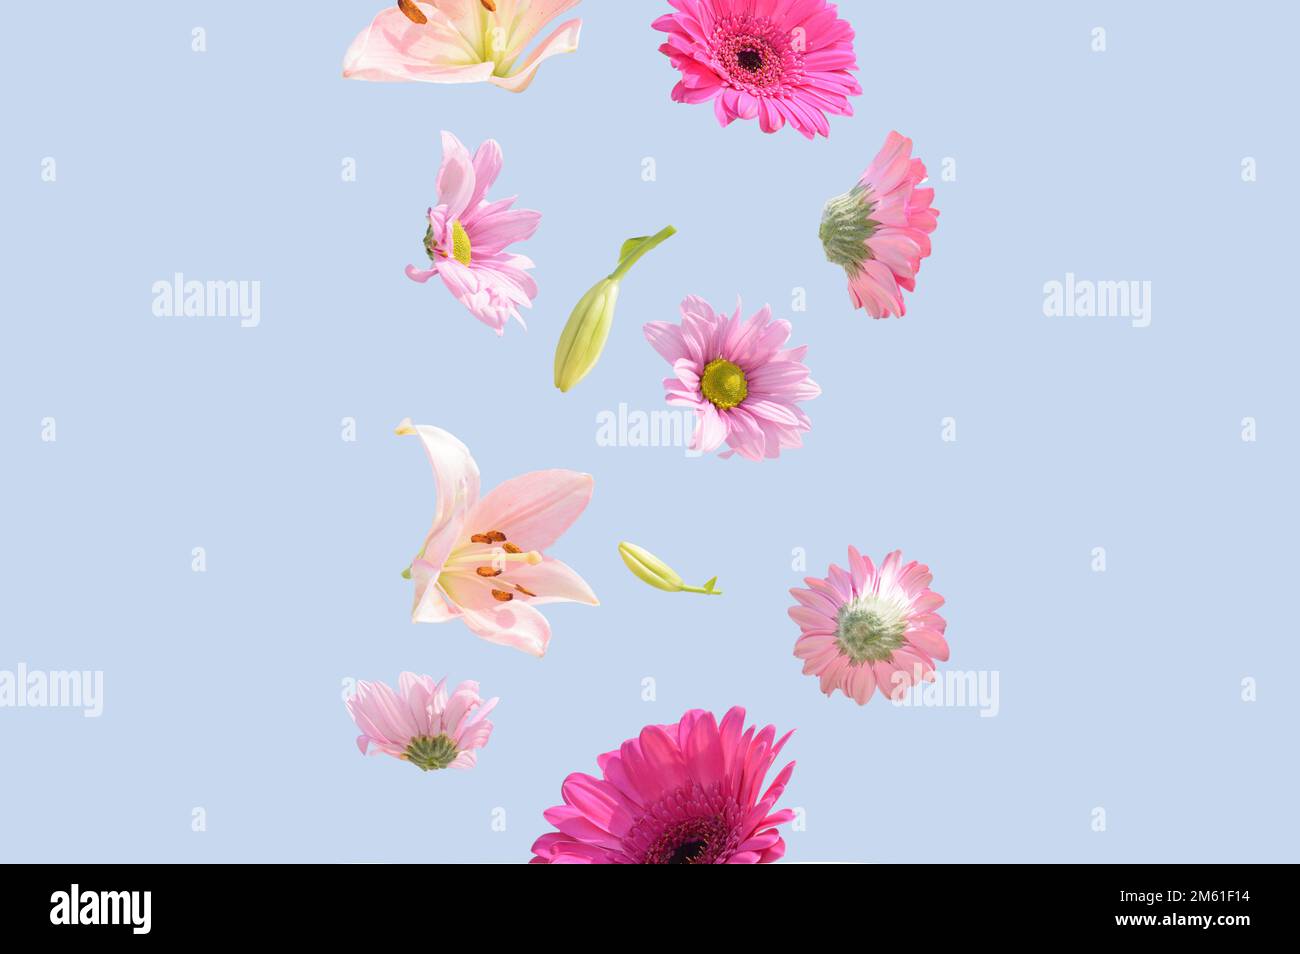 Fleurs sur fond bleu pastel. Fleurs d'été colorées rose et violet tendance volant. Concept surréaliste esthétique de la nature de printemps. Banque D'Images